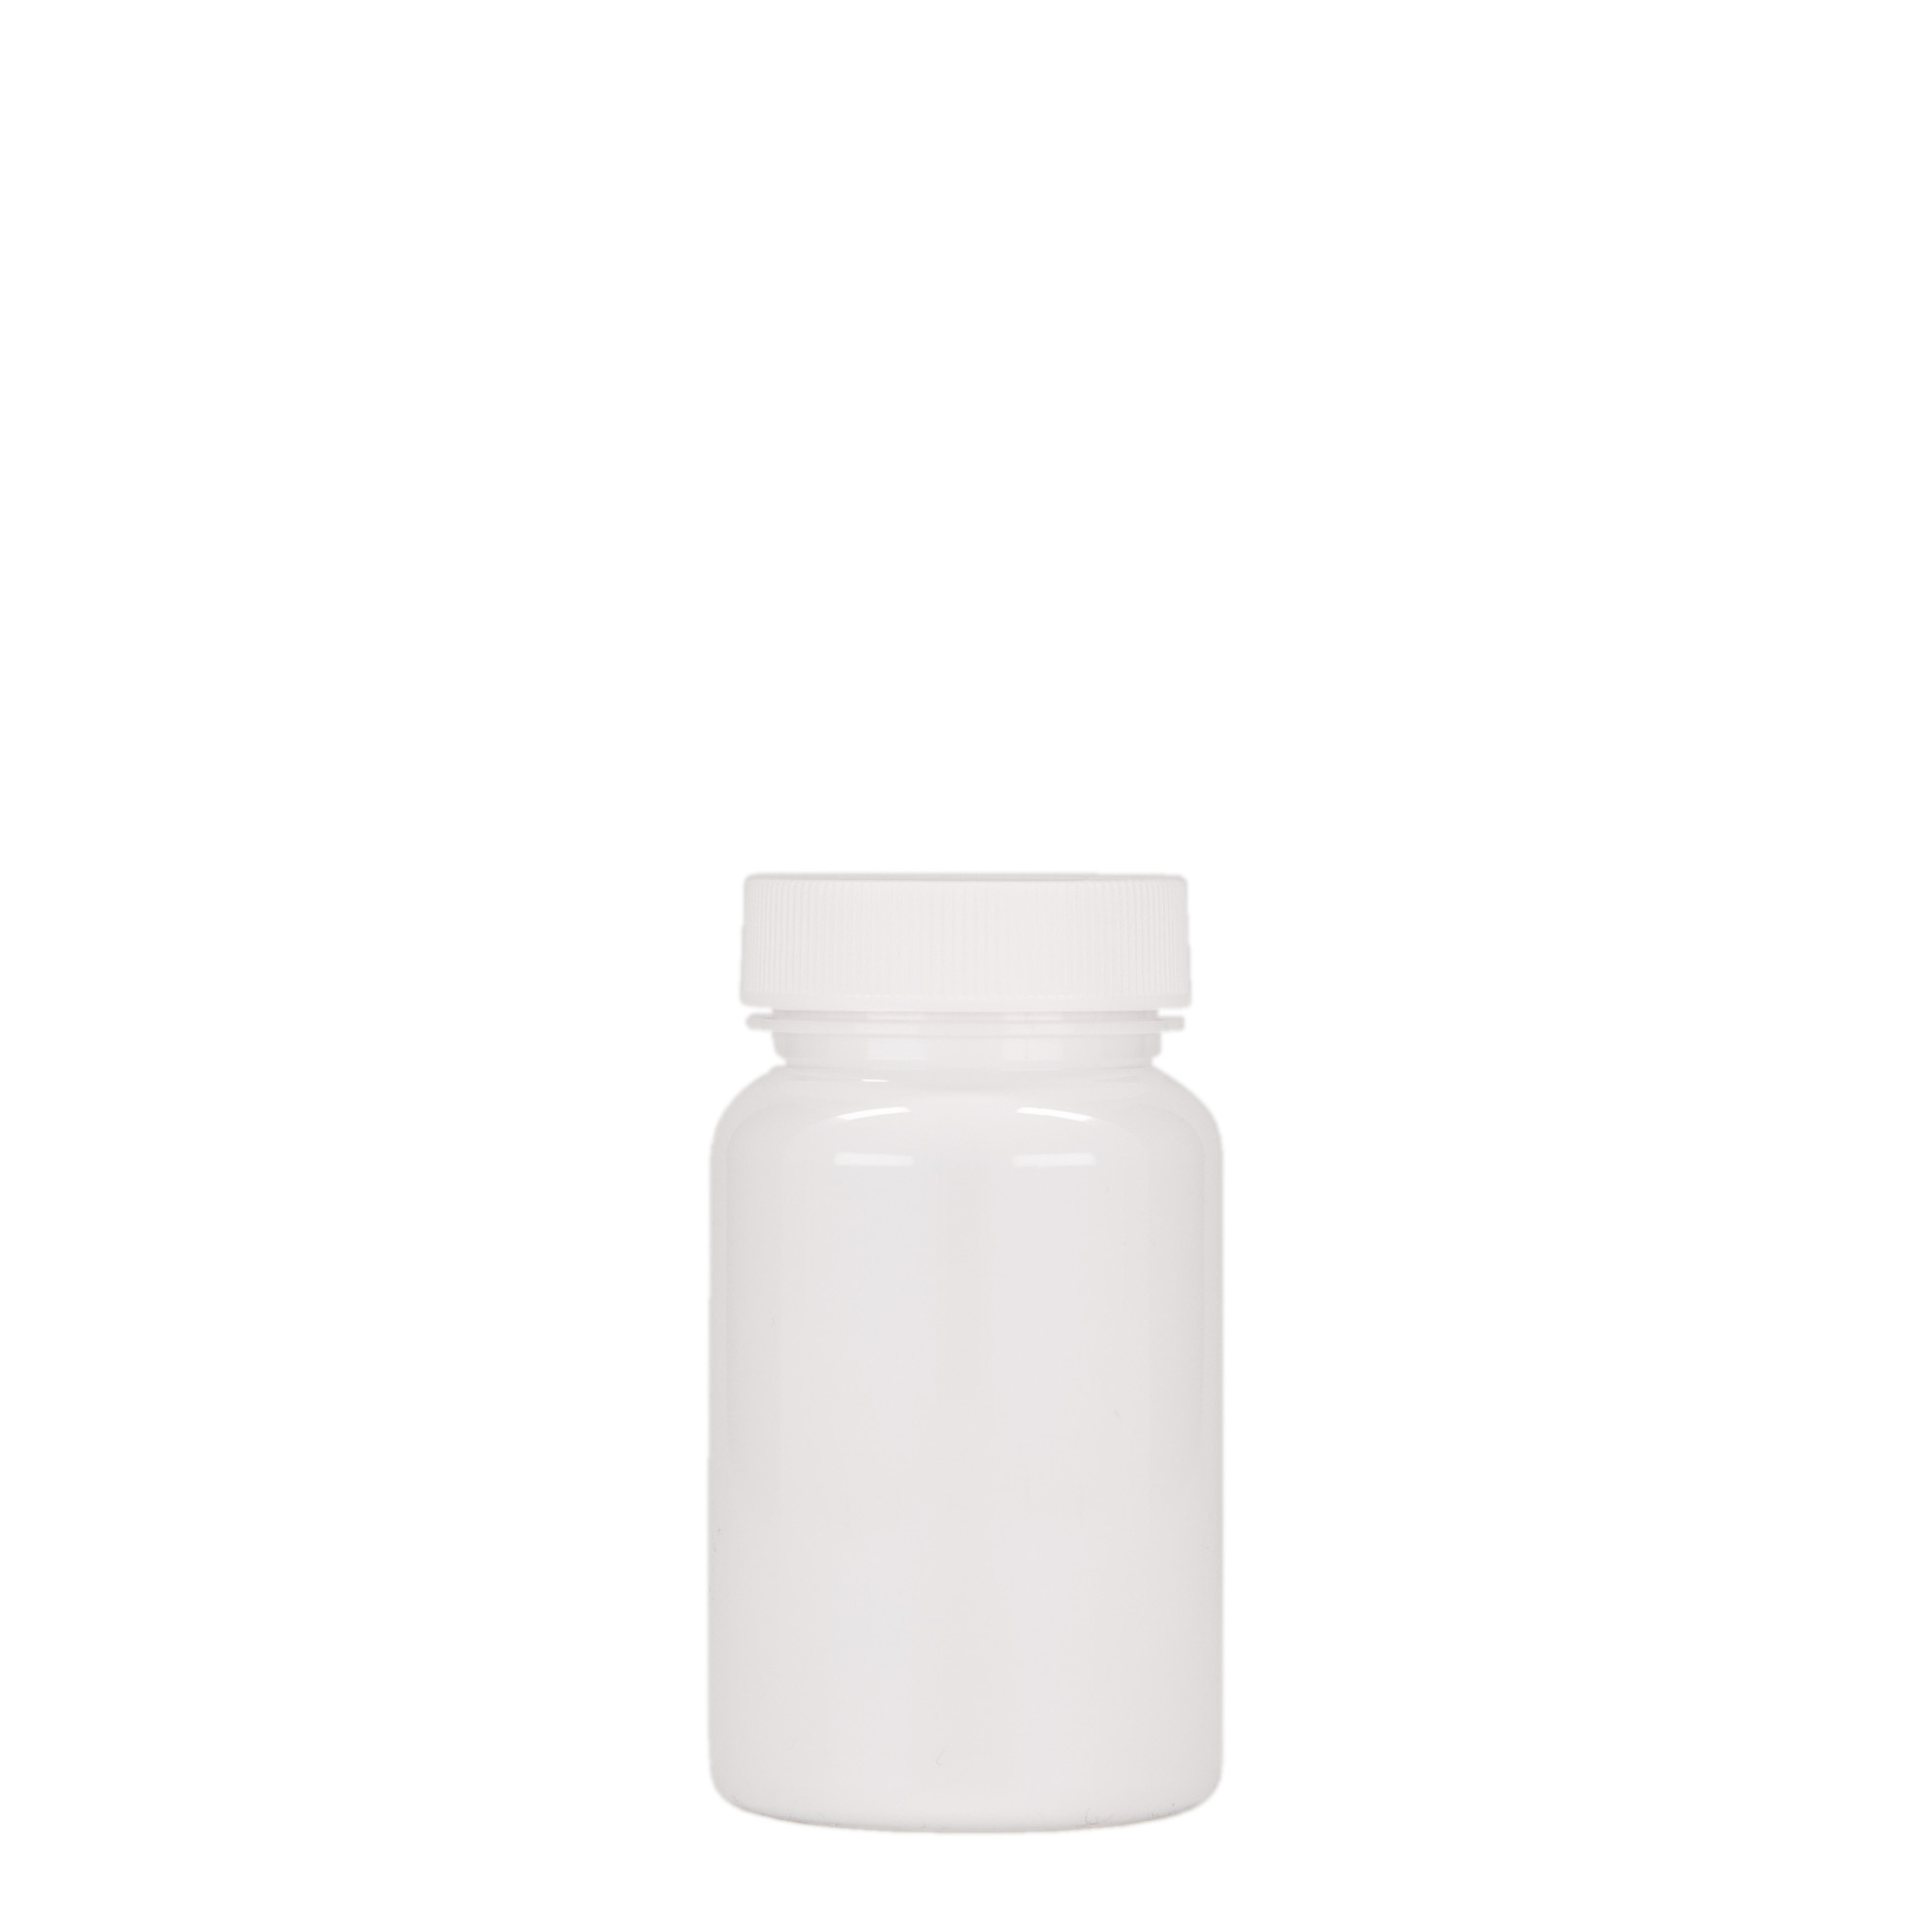 75 ml PET packer, plastic, white, closure: GPI 38/400